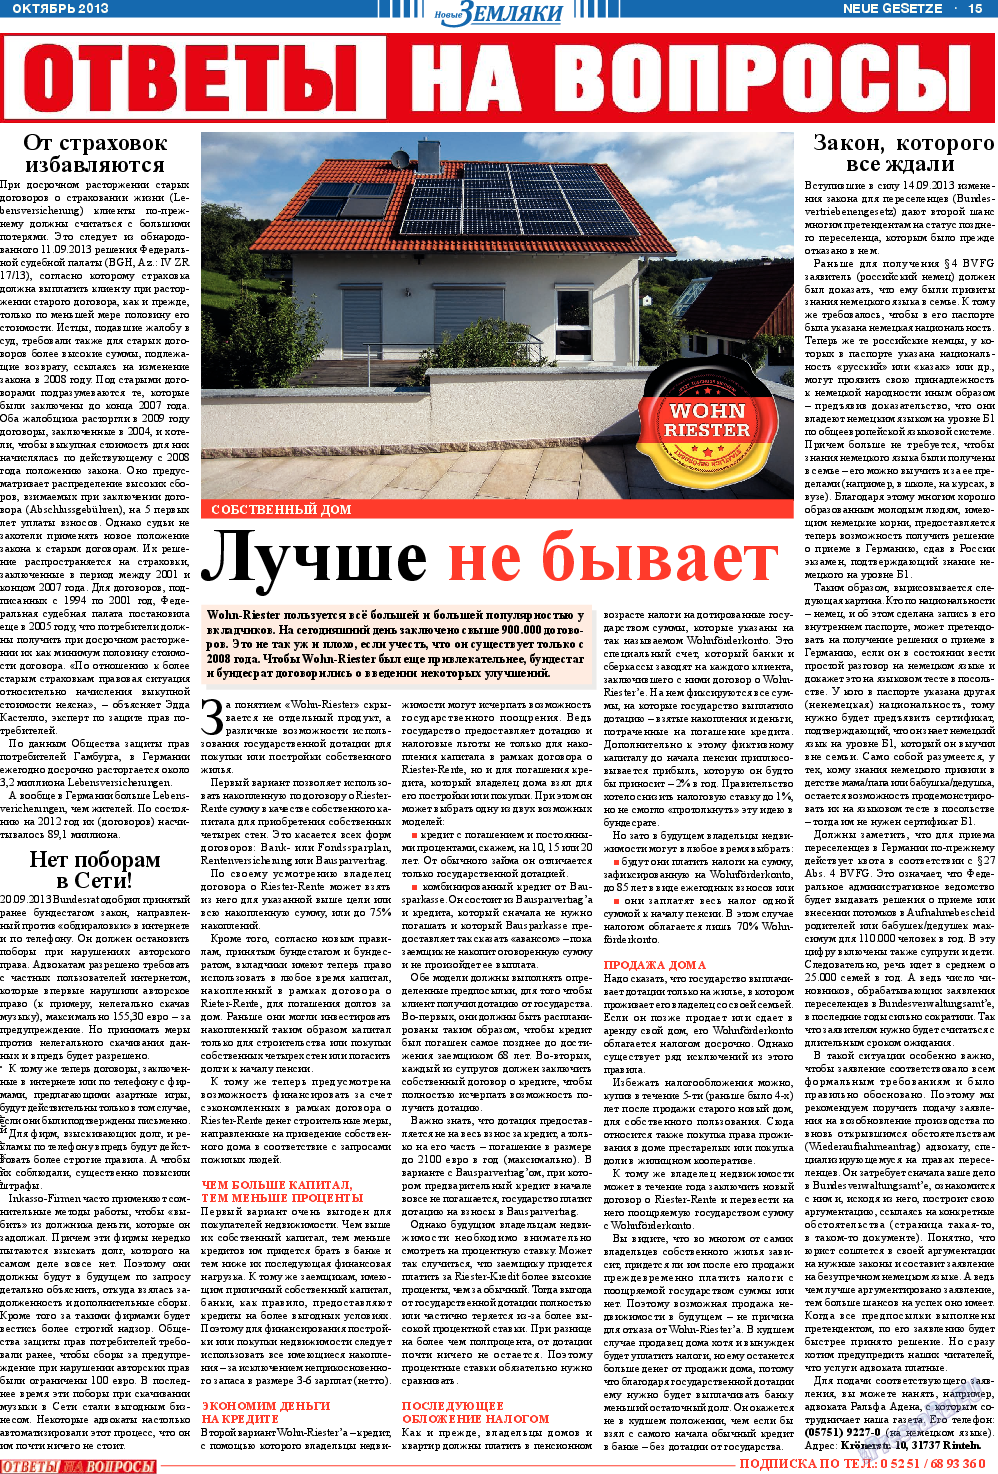 Новые Земляки, газета. 2013 №10 стр.15